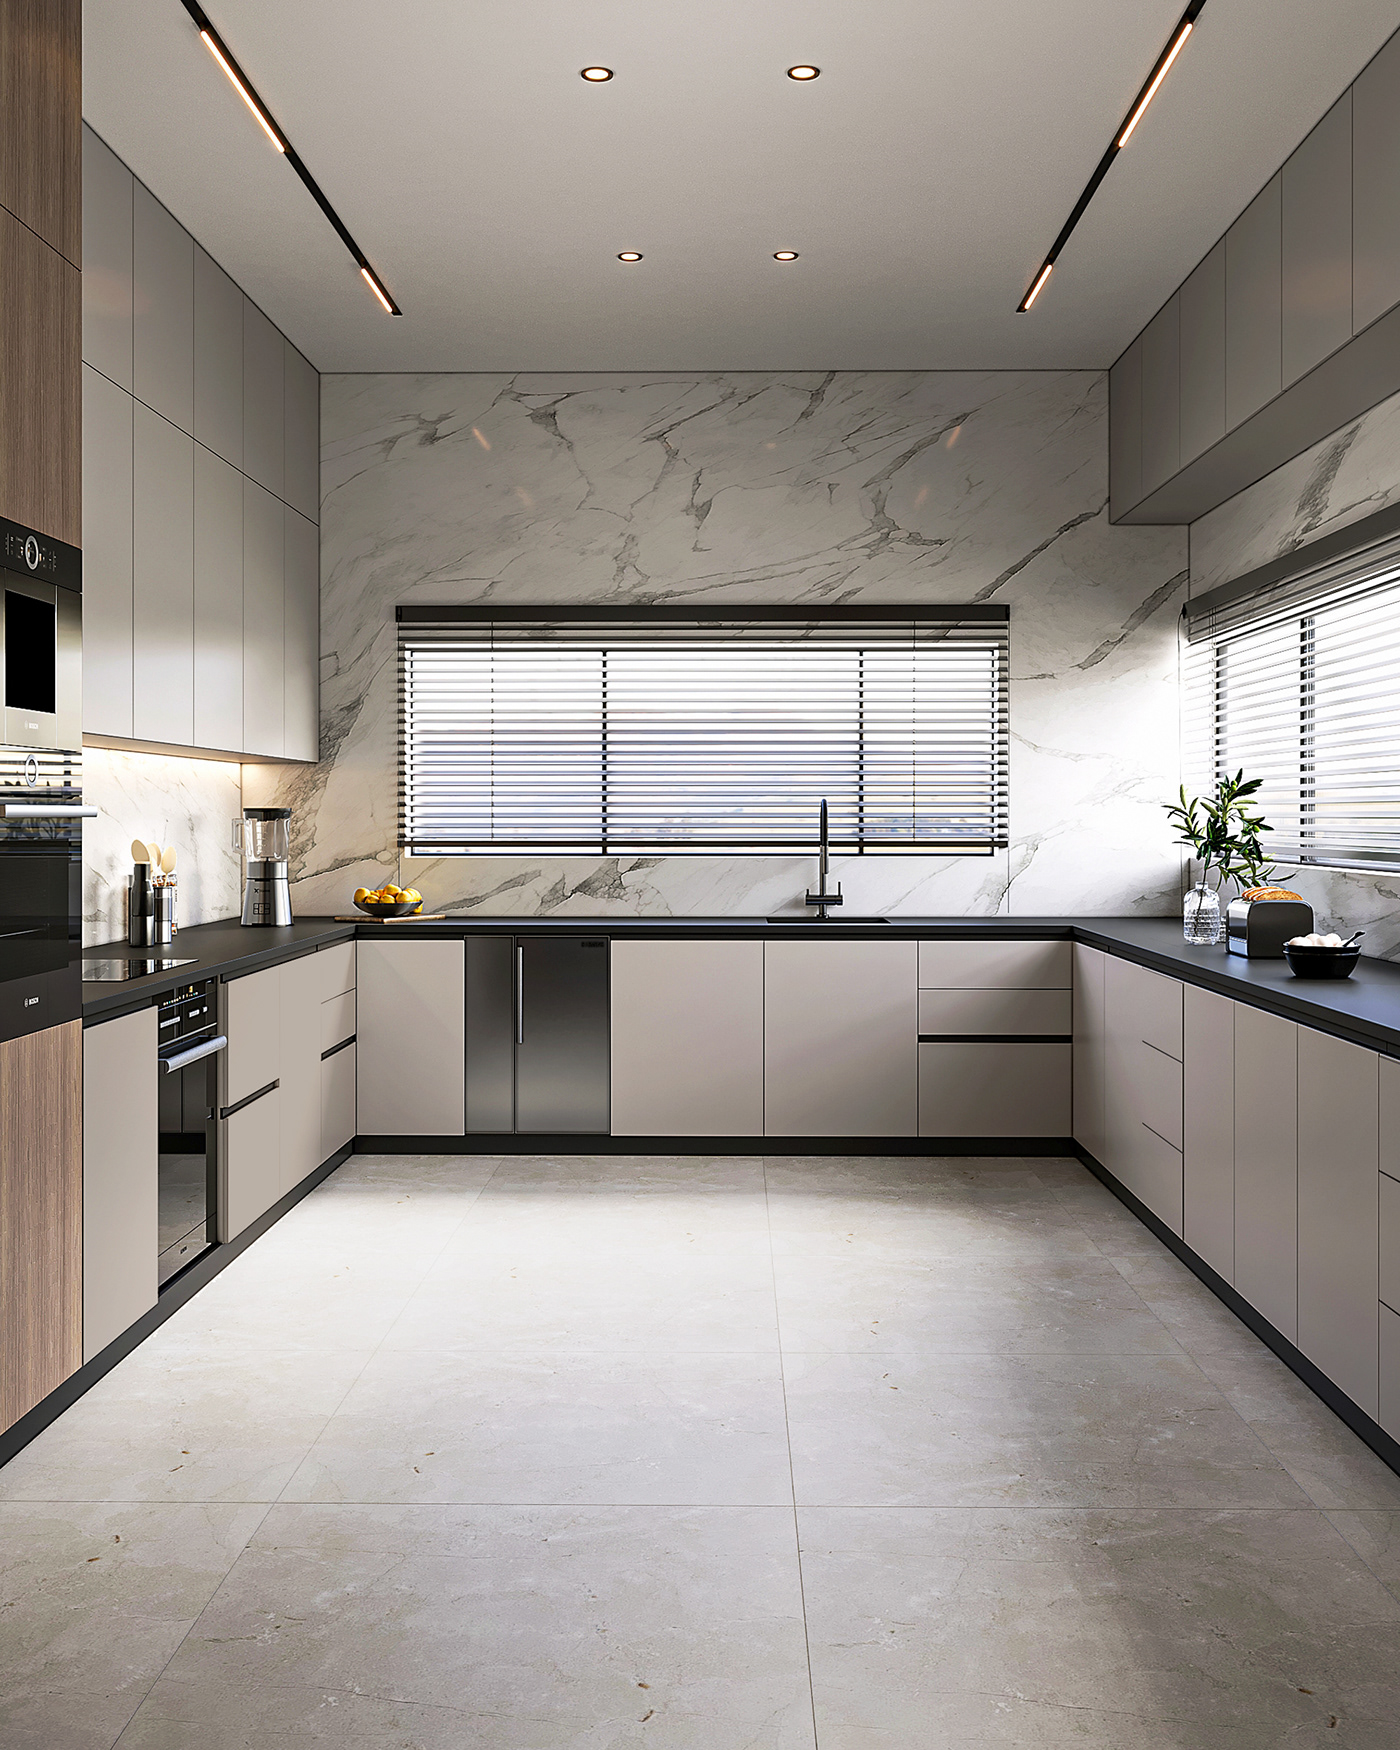 drawer Sink kitchen interior design  visualization architecture Render corona 3ds max design